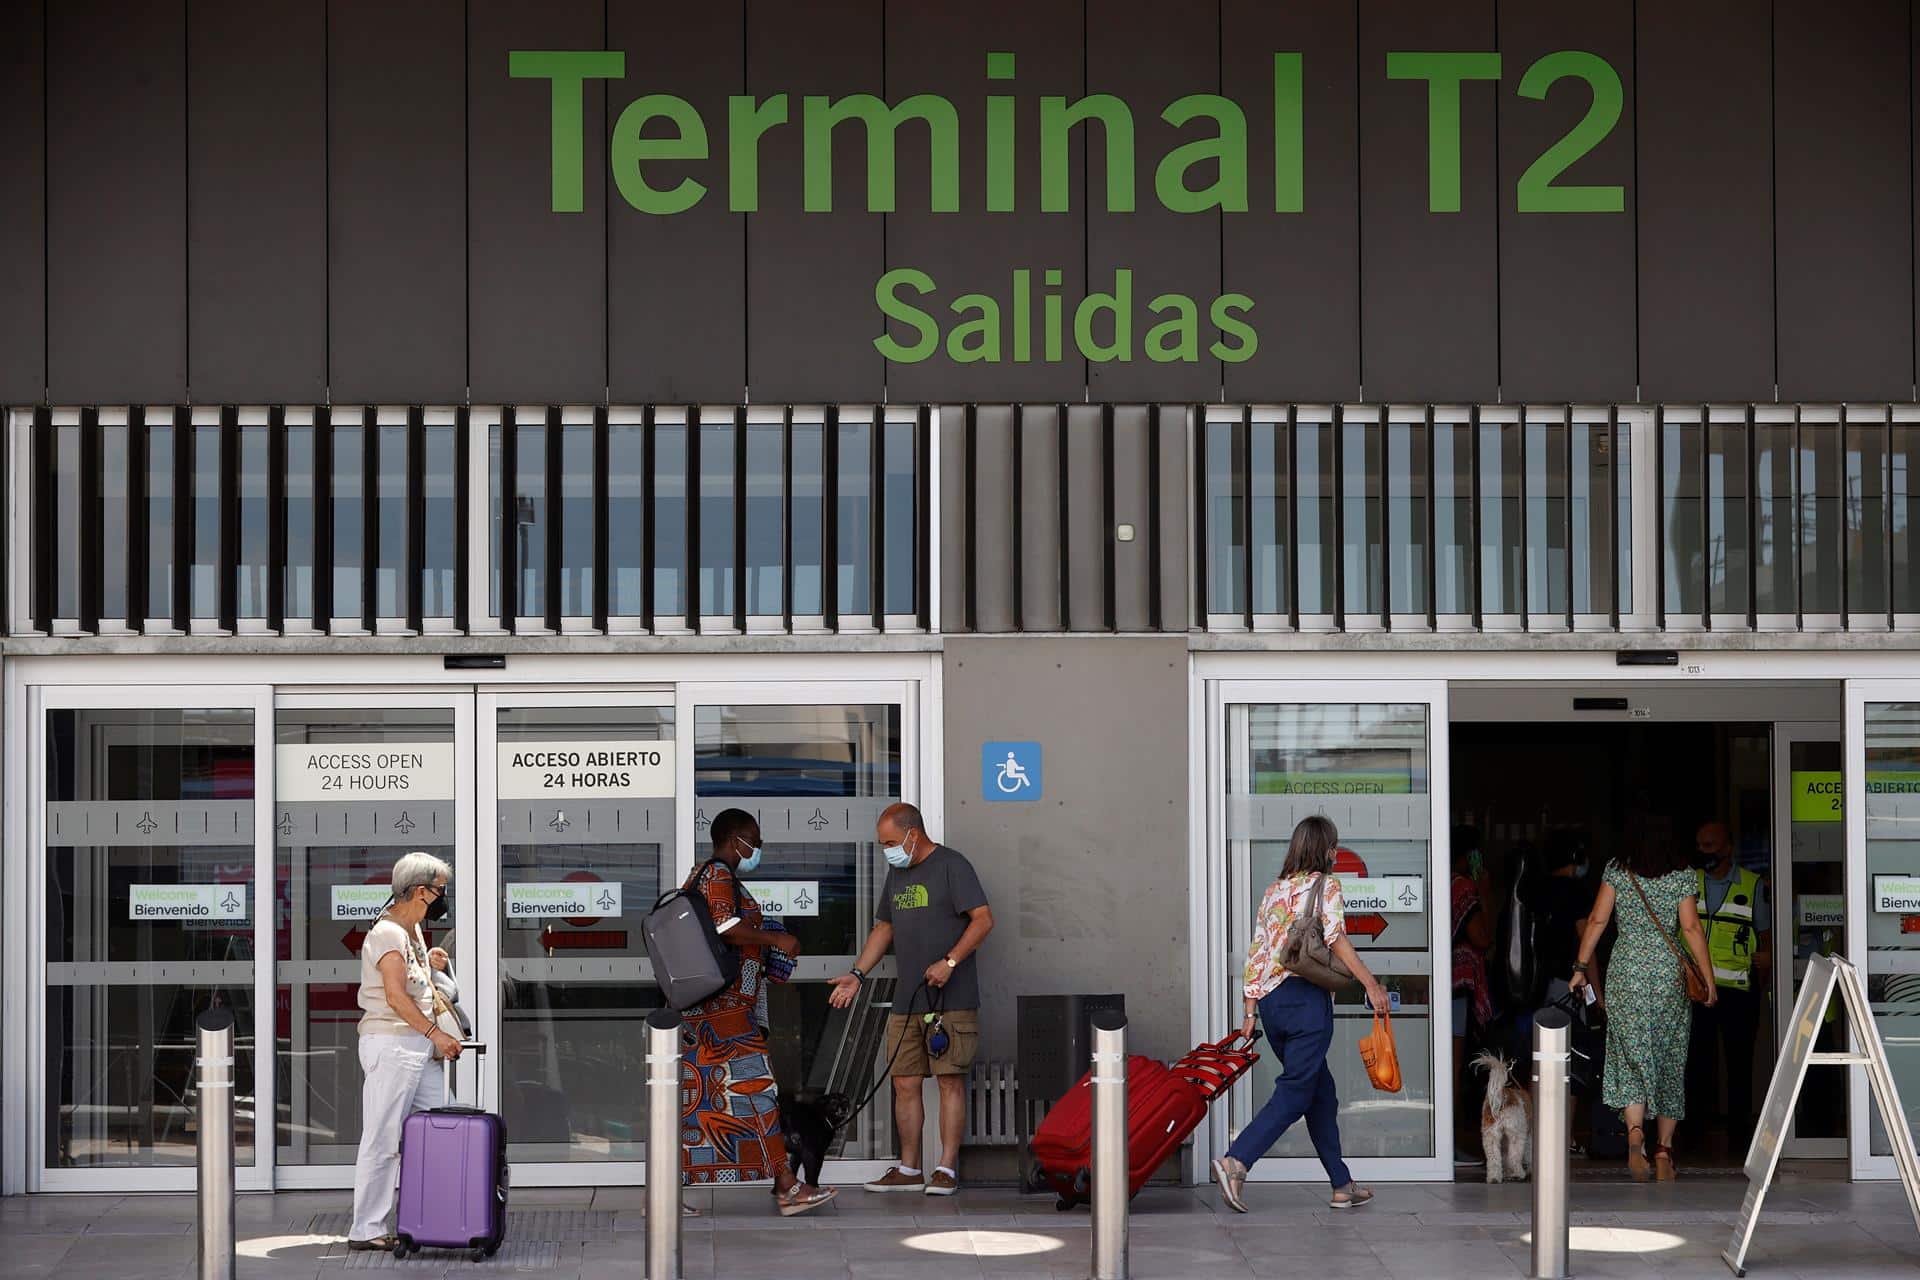 Pasajeros llegan al aeropuerto de Madrid Adolfo Suárez Barajas este jueves, fecha de inicio de la operación salida, que coincide con la reapertura de las terminales T2 y T3, con las que el aeropuerto recupera toda su operativa tras el cierre por la pandemia del coronavirus.